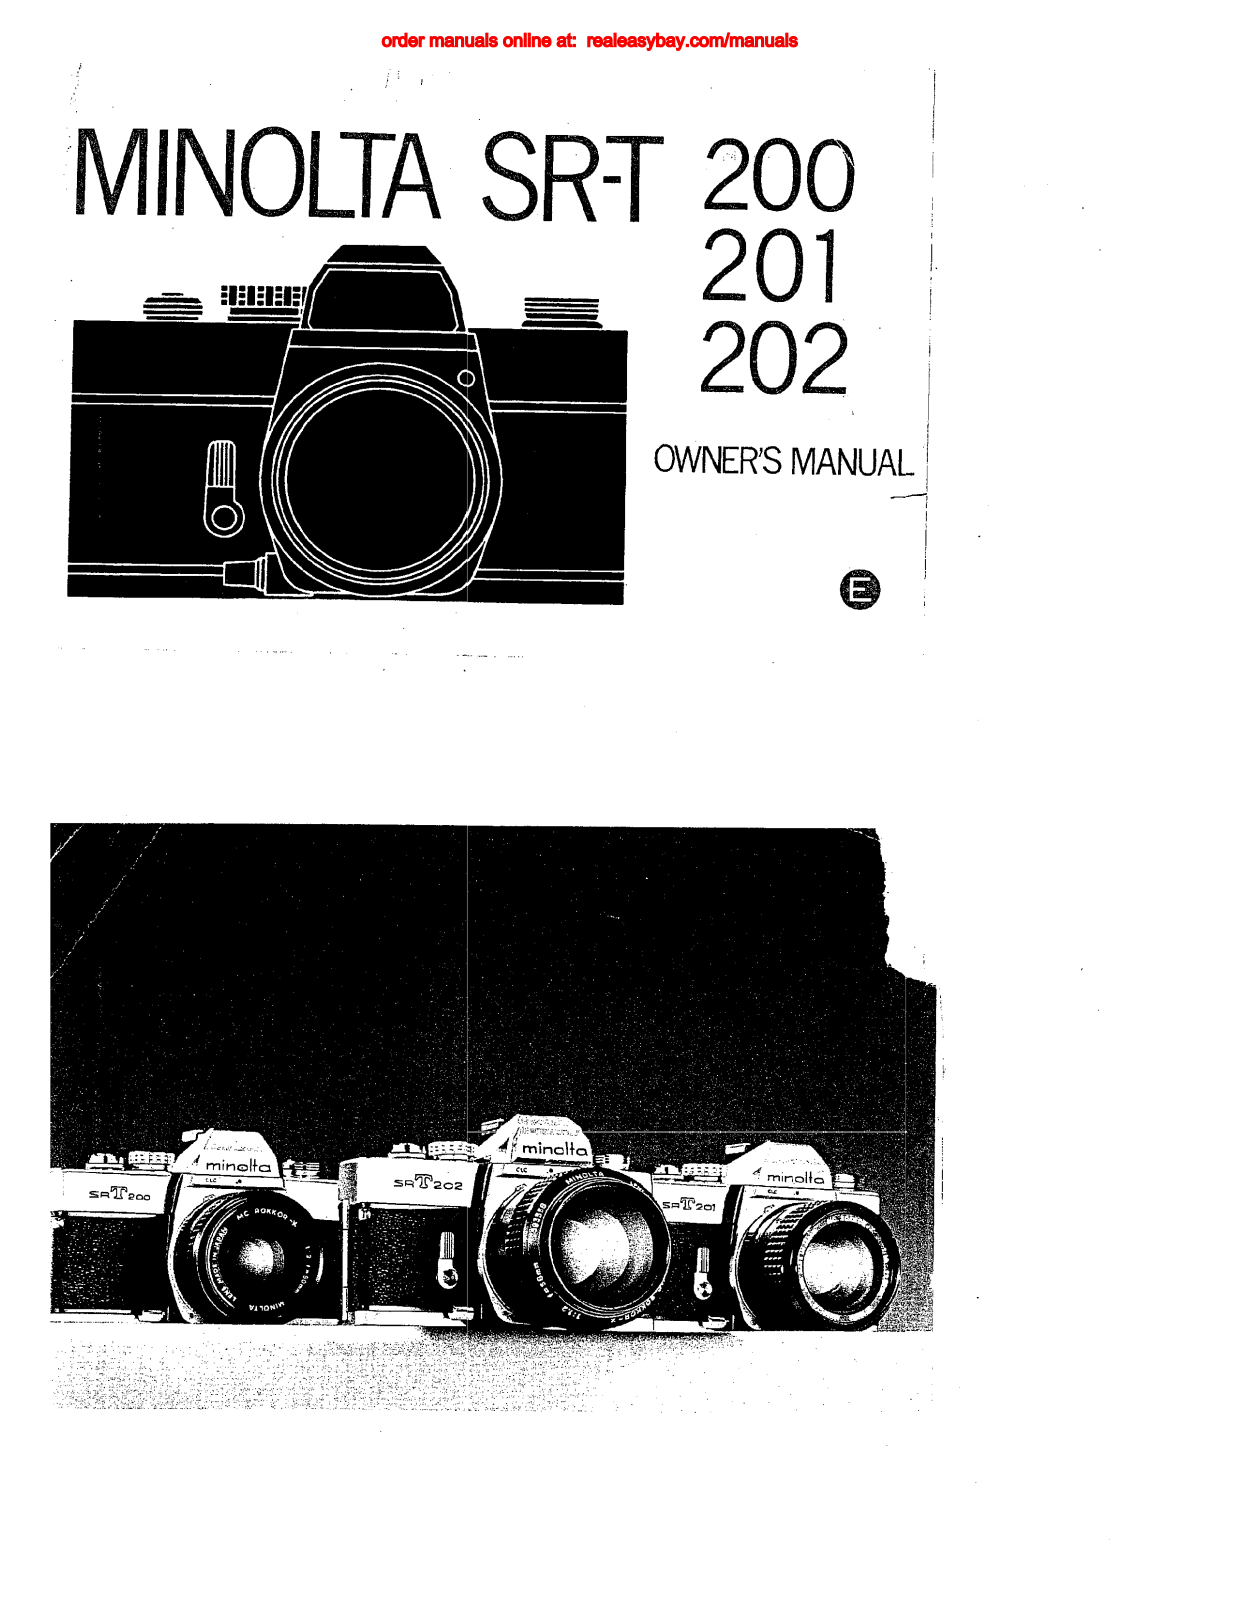 Minolta SR-T 201, SR-T 200, SR-T 202 owners Manual